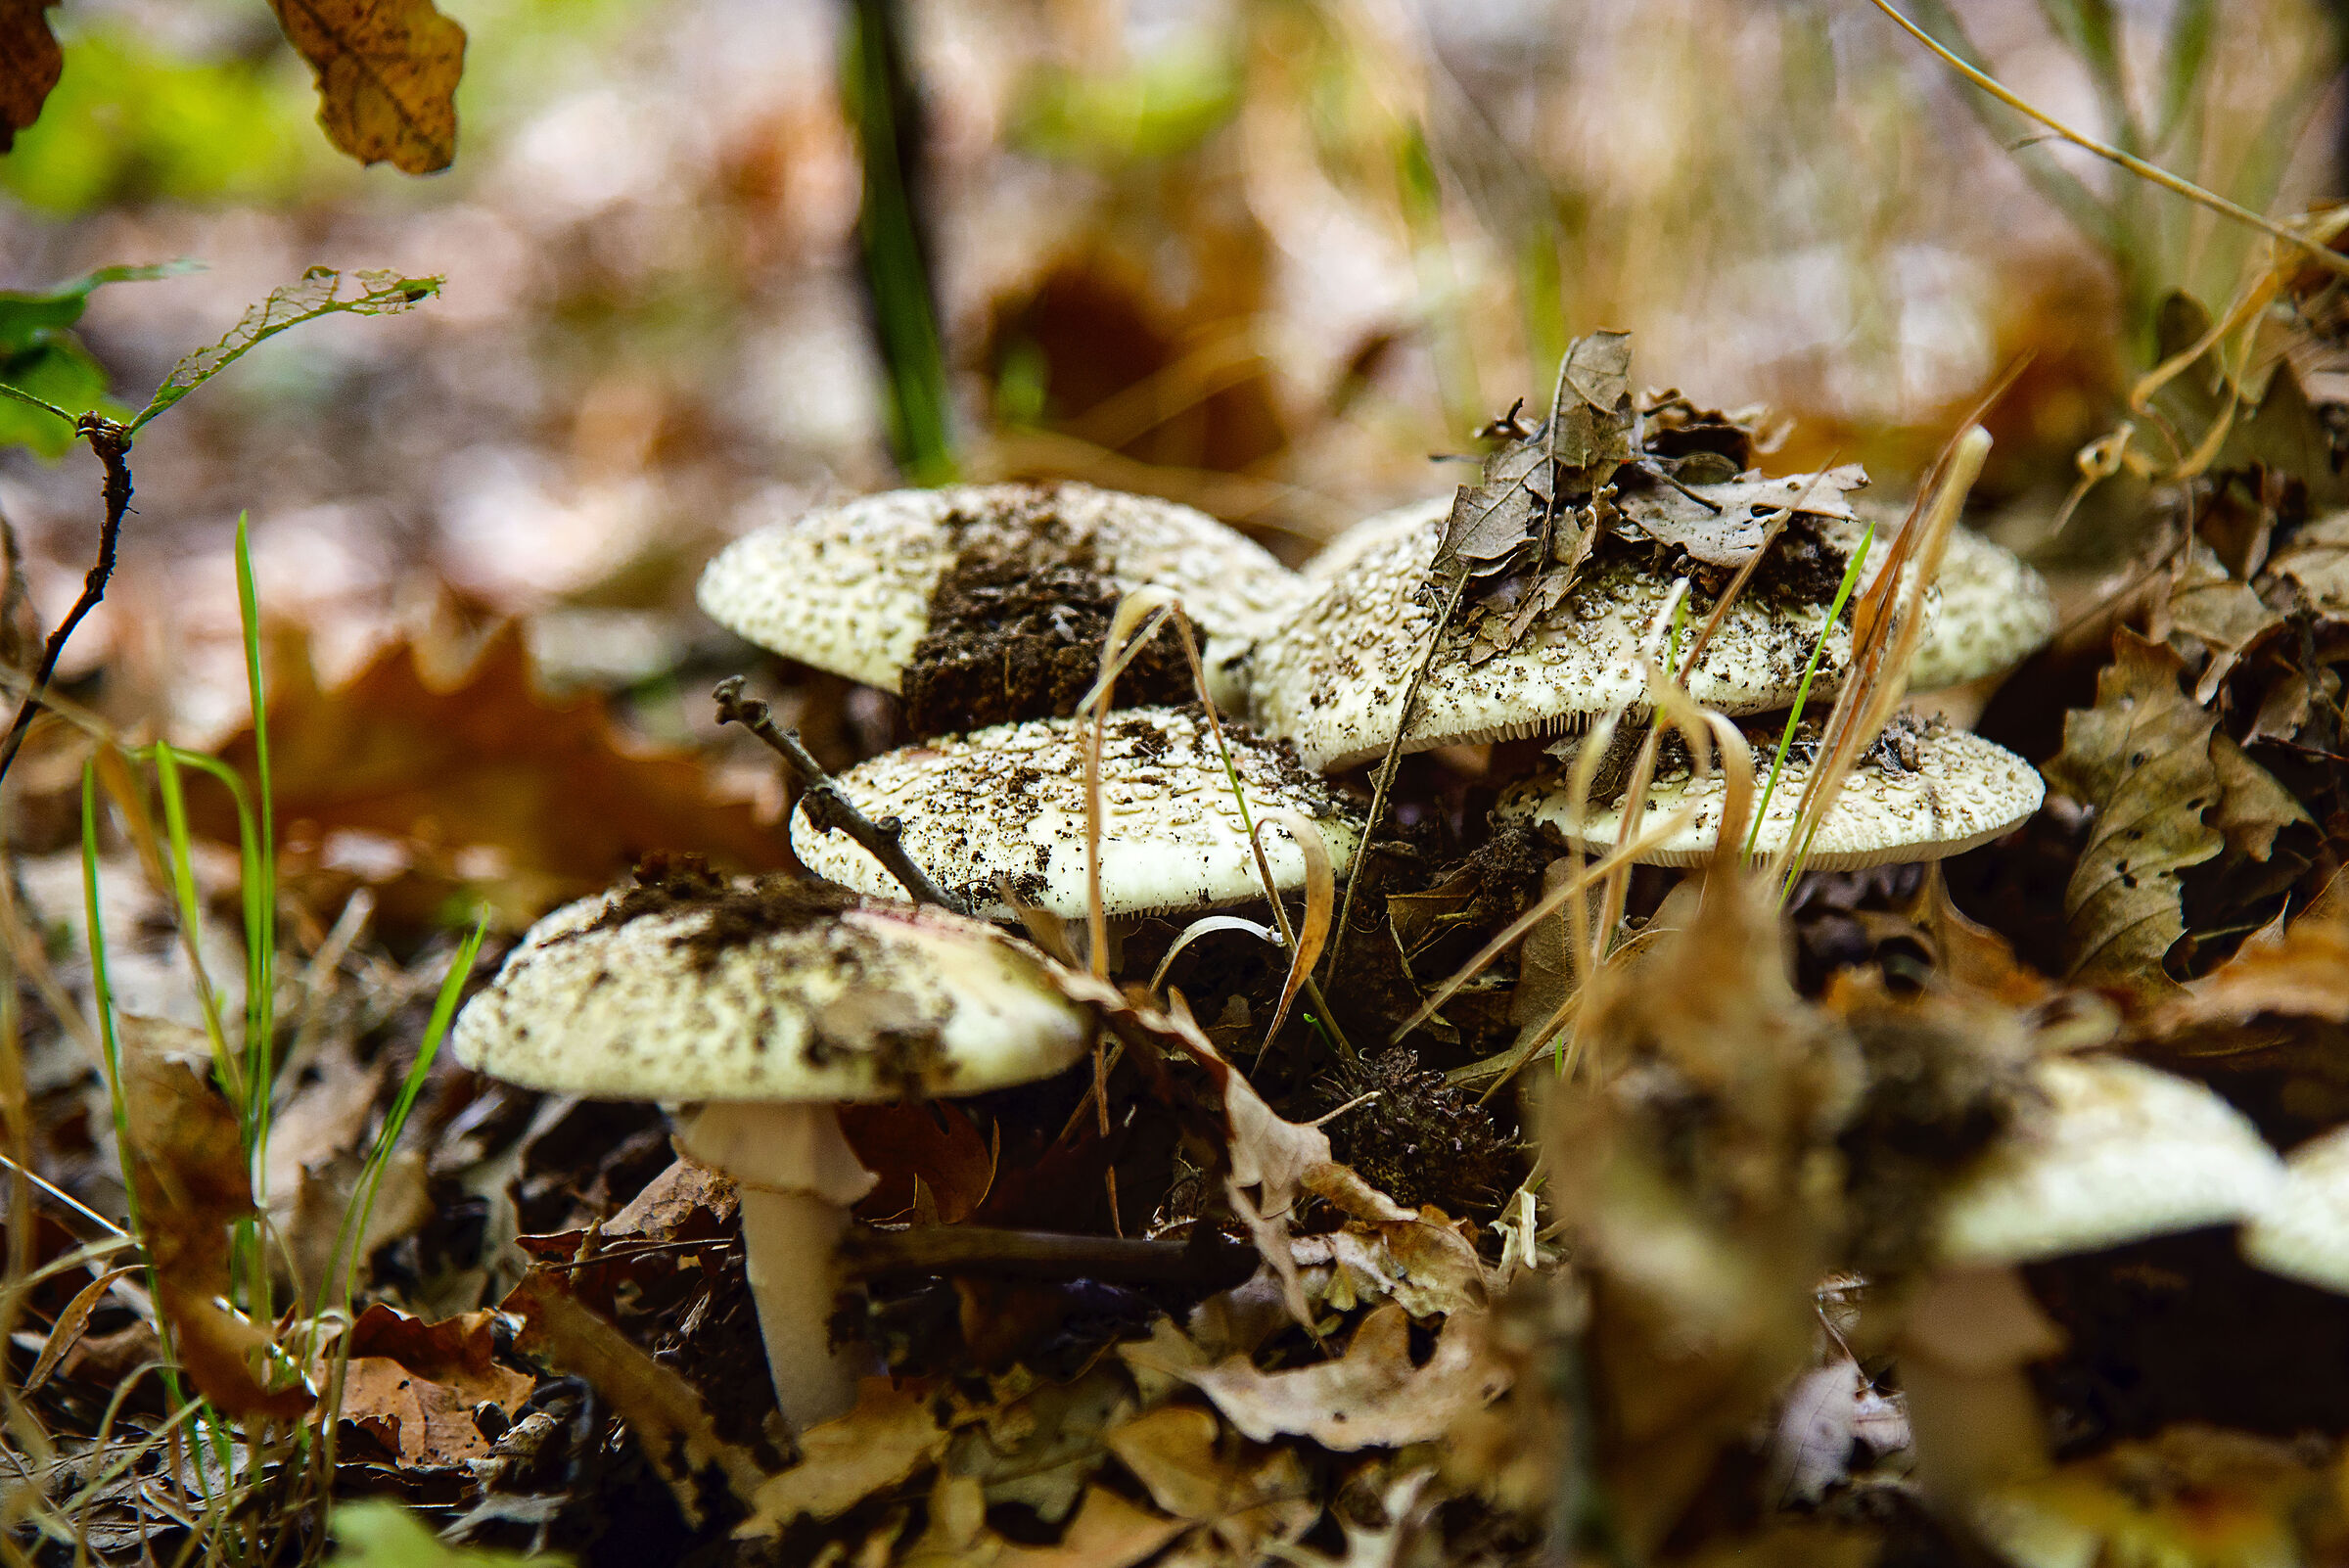 Autumn mushrooms...